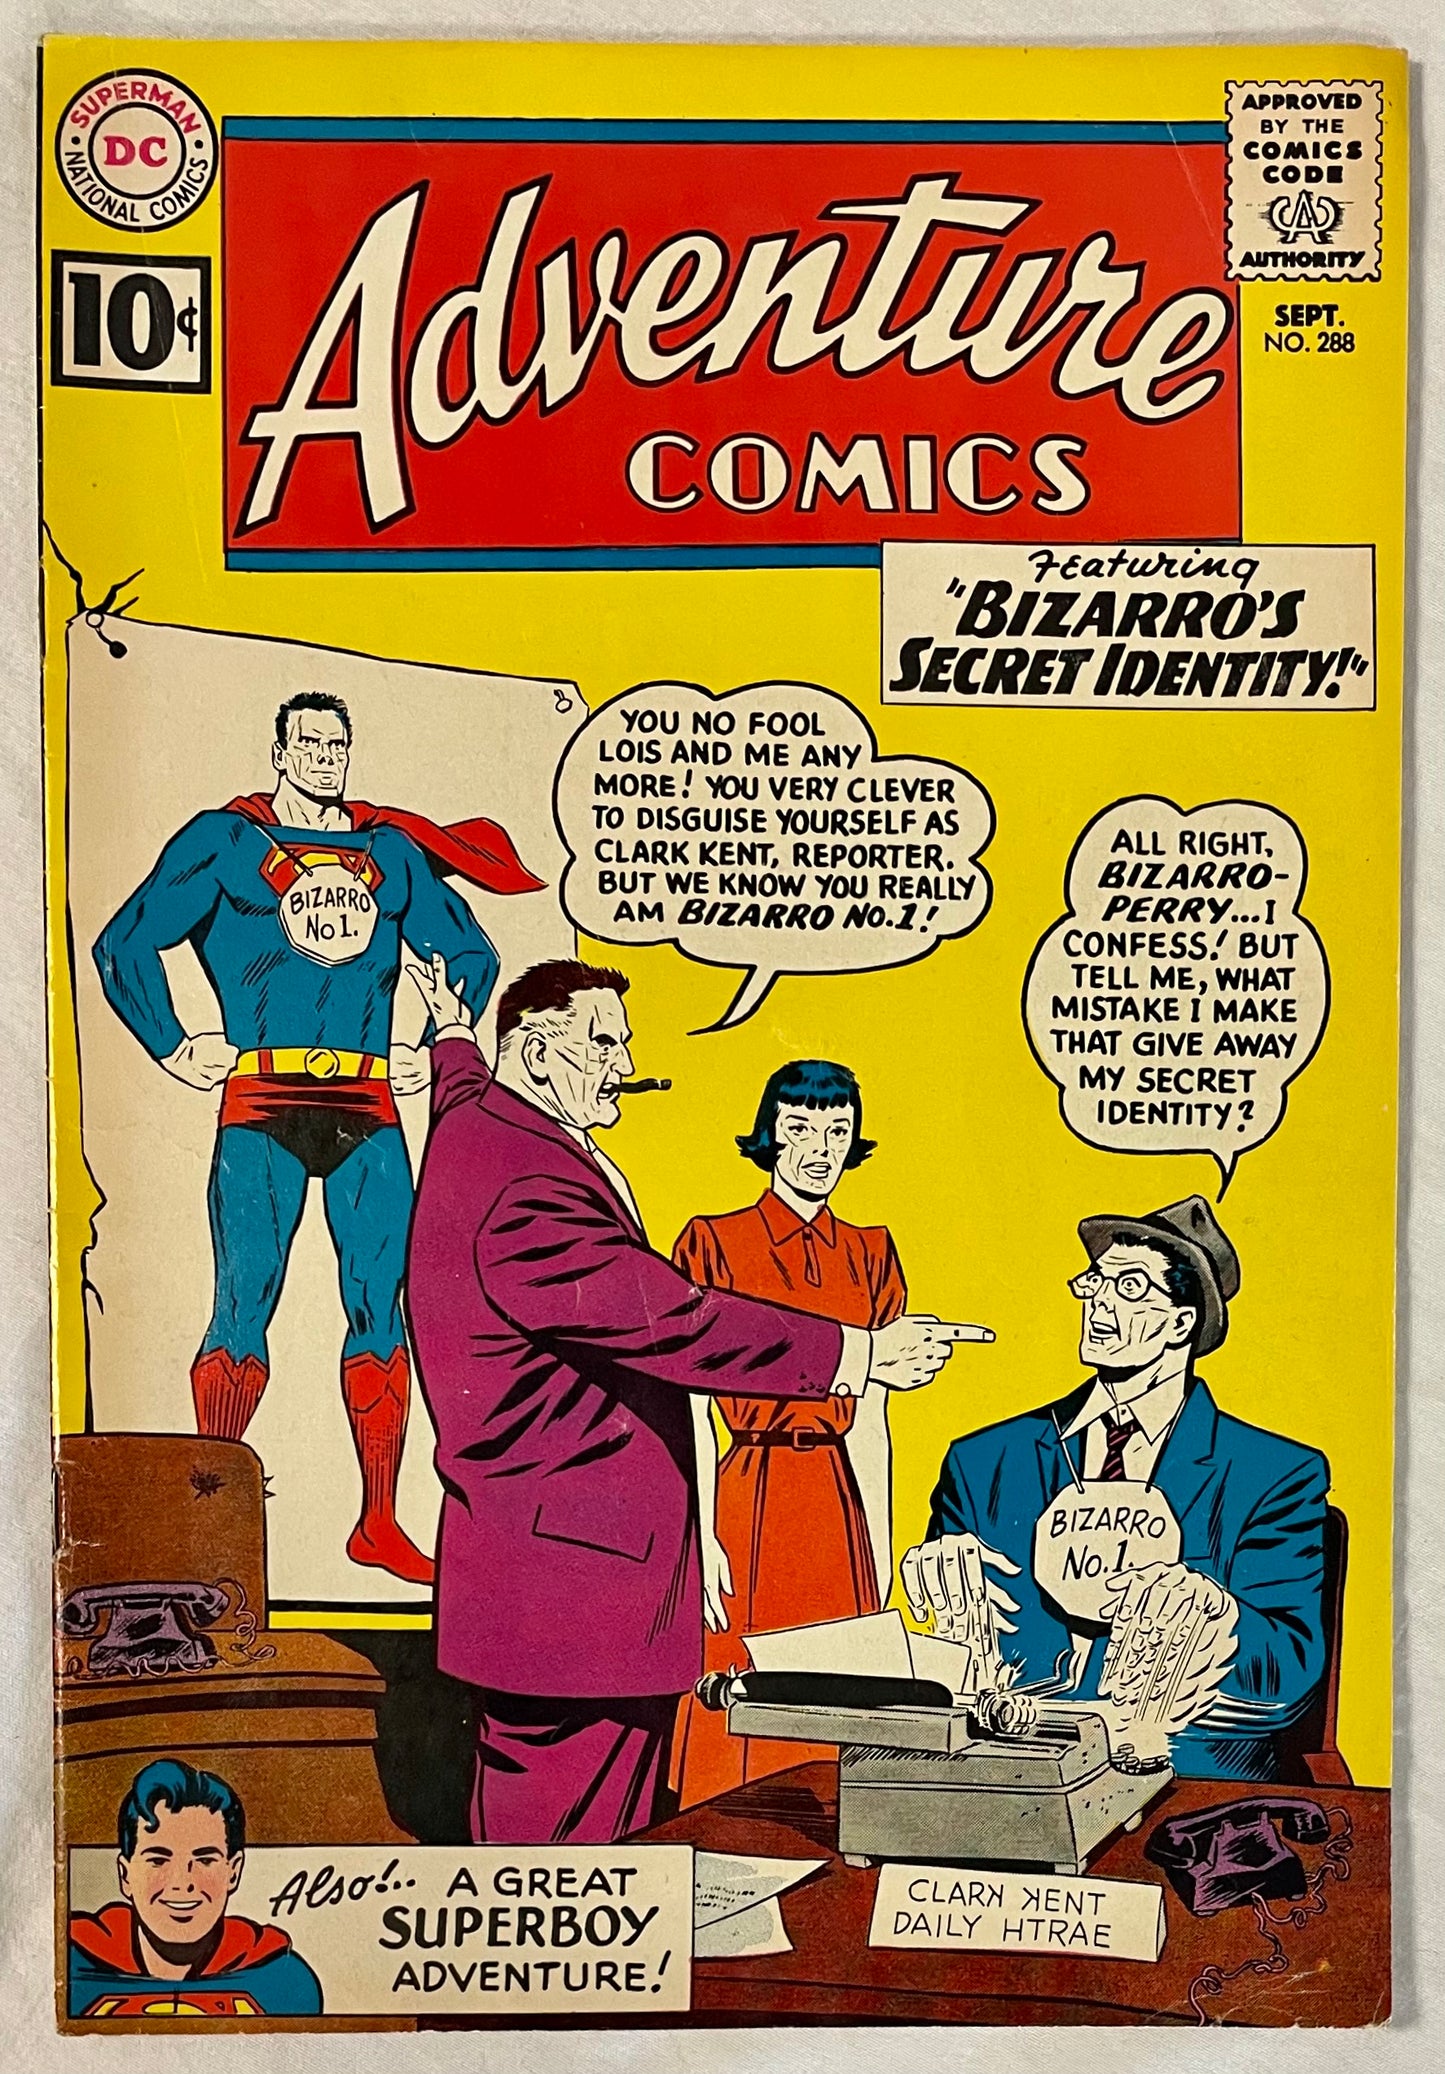 DC Comics Adventure Comics No. 288